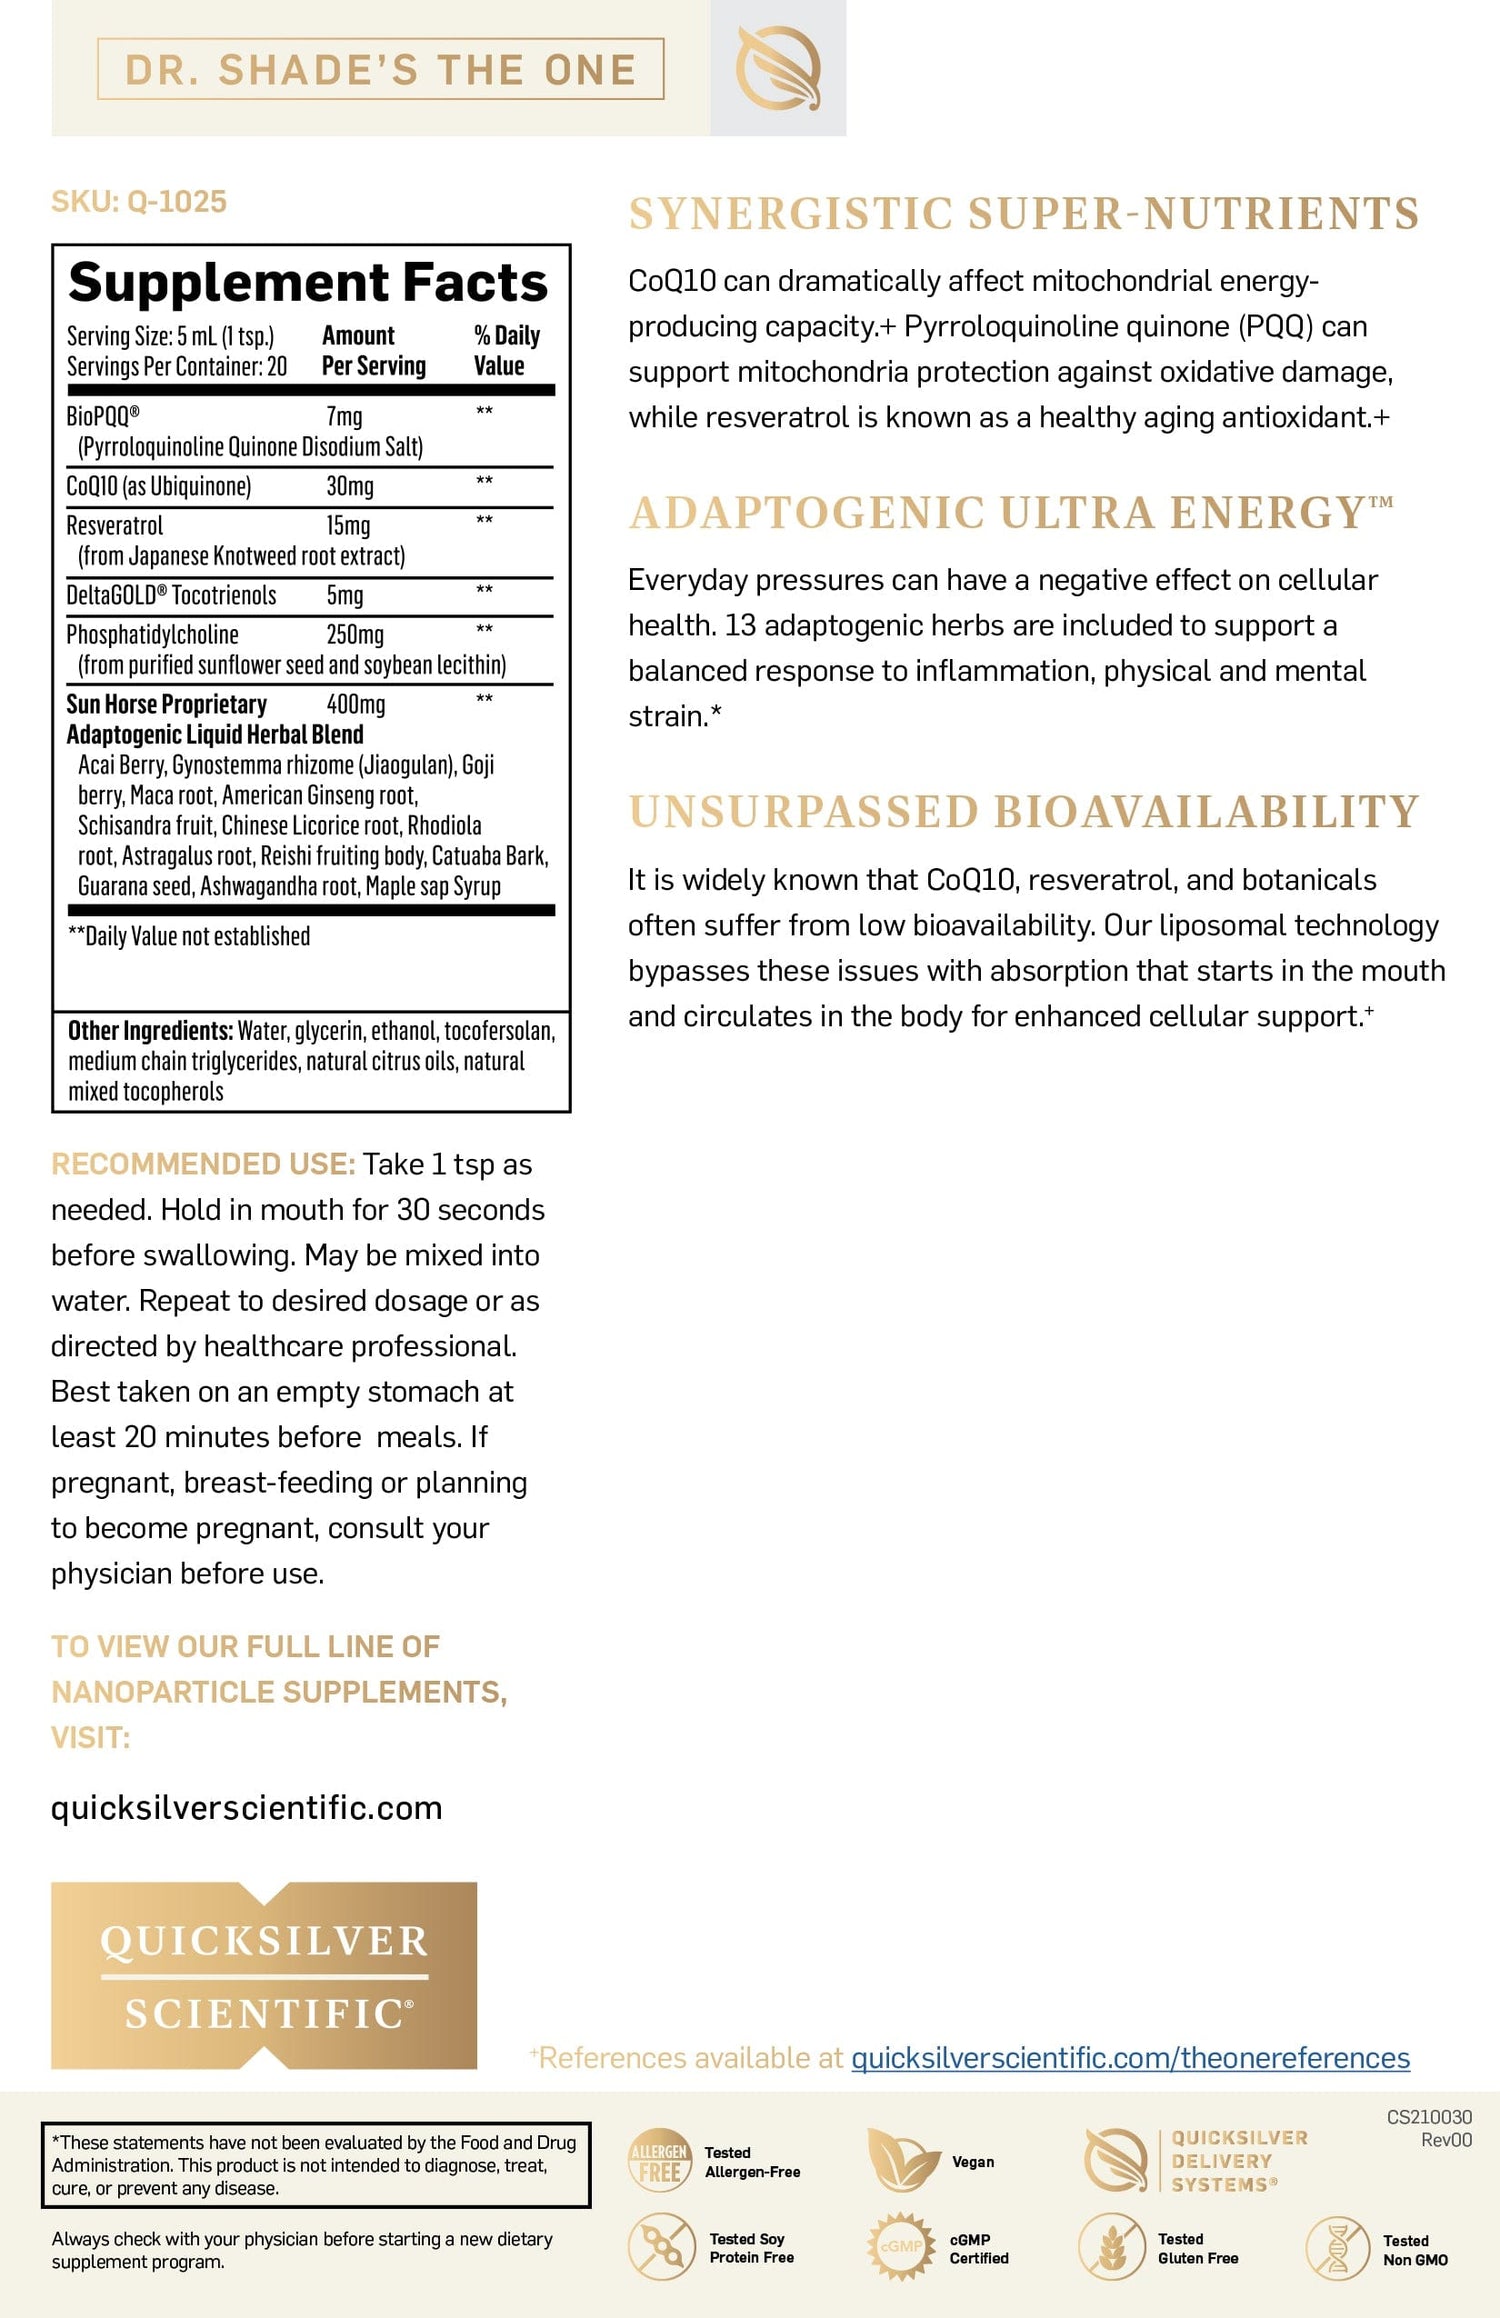 QS Liposomal Energy Supplement Fact Sheet